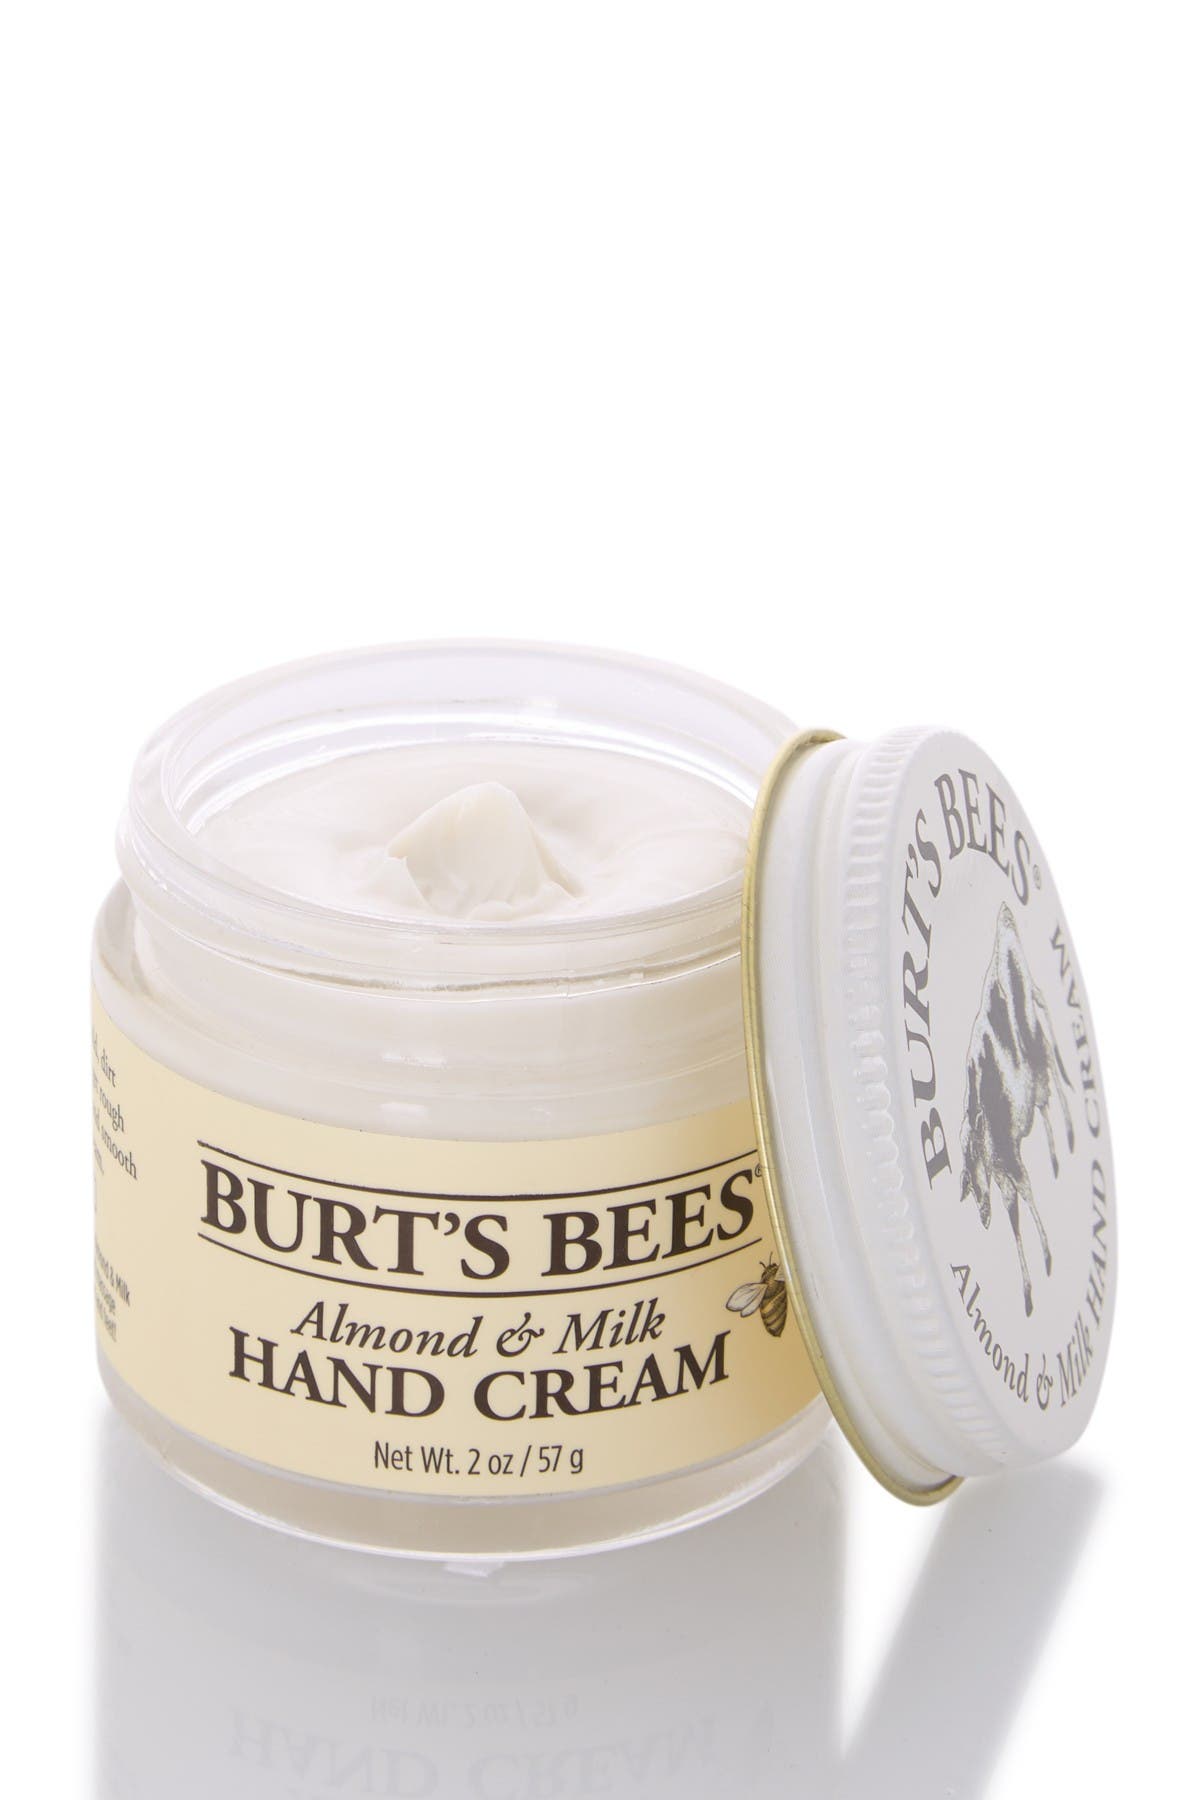 Schrijfmachine logo Bij naam BURT'S BEES | Almond Milk Hand Cream | Nordstrom Rack